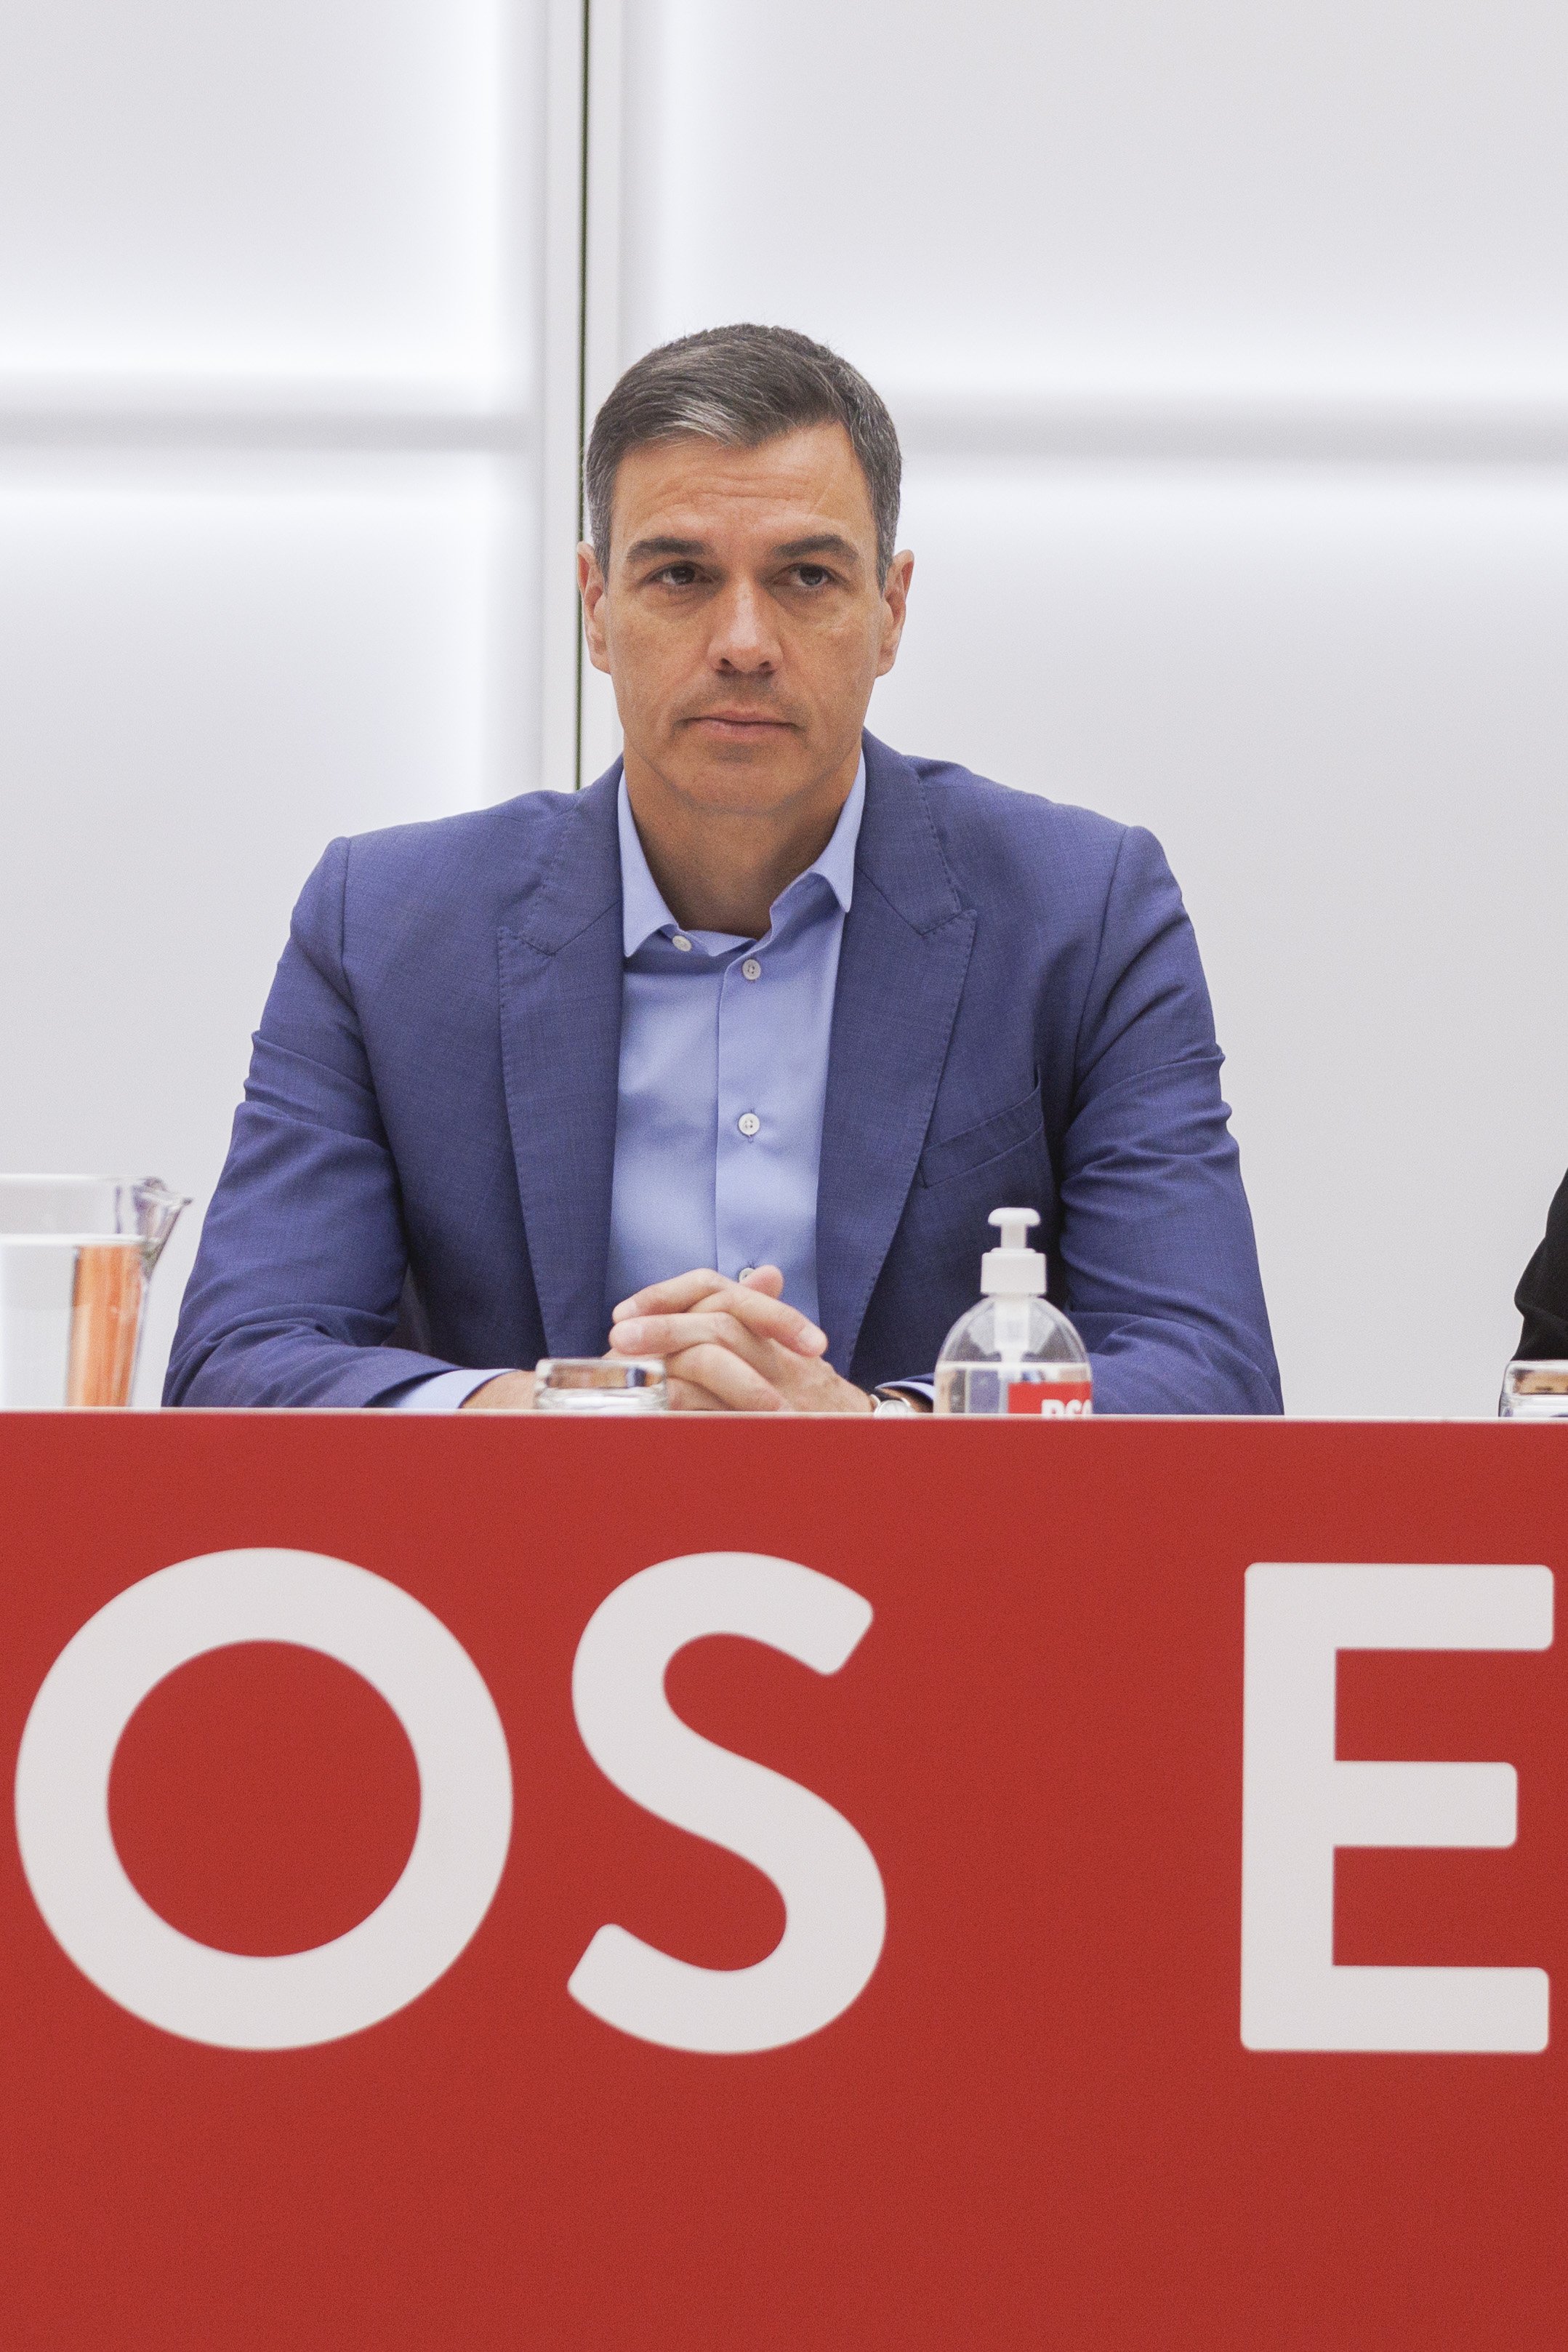 Pedro Sánchez avança el Consell de Ministres a dissabte per aprovar les mesures anticrisi